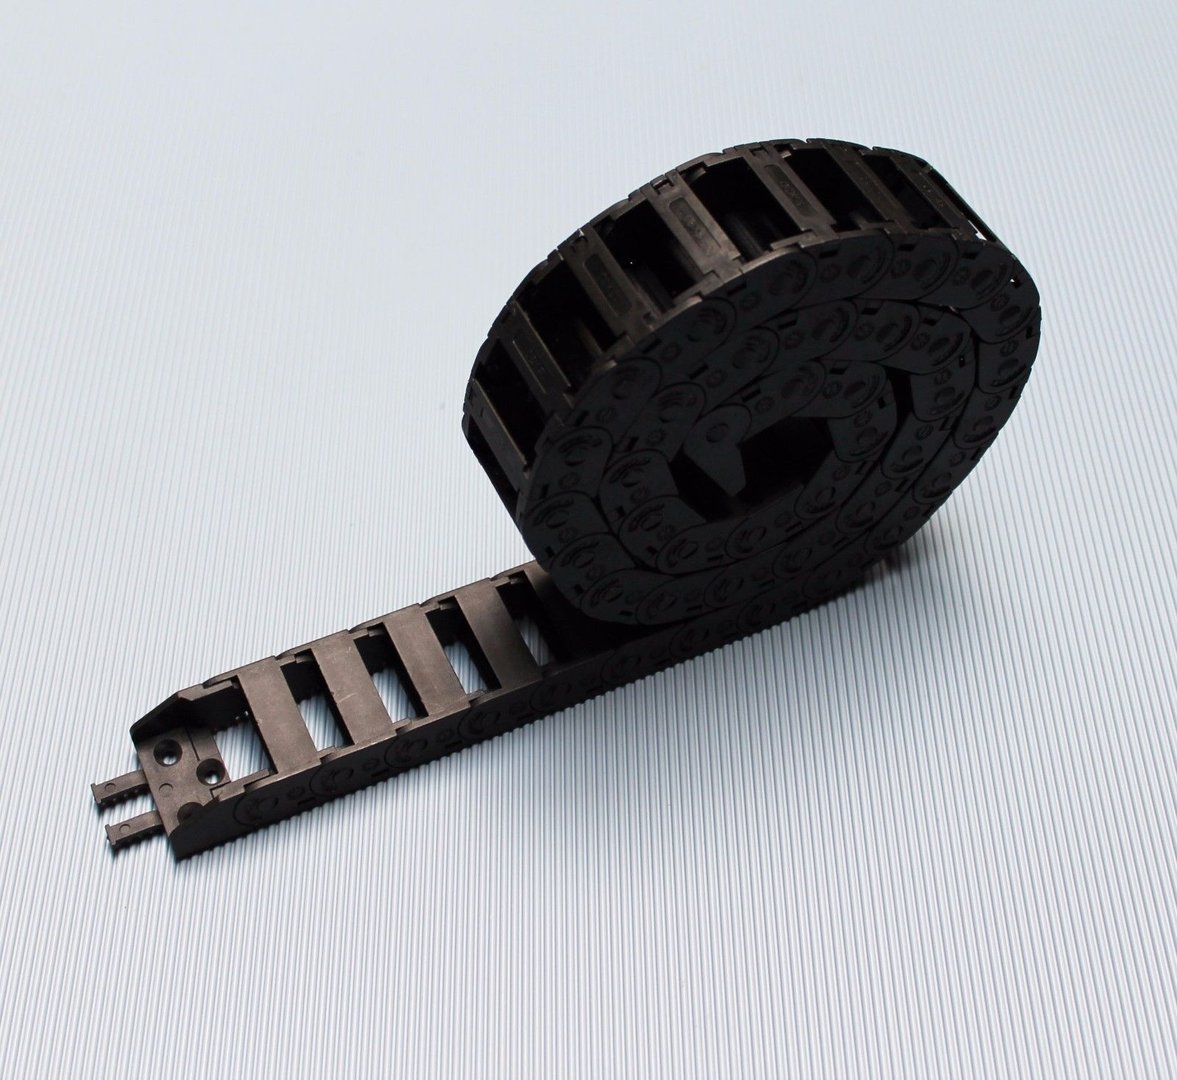 Energiekette 15 x 30 mm Cable Drag Chain Aus Verstärktes Nylon Hochwertige für 3D-Drucker Cnc-Werkzeugmaschinen Transportgeräte Kabelschleppkette YeenGreen Schleppkette 1 Meter 